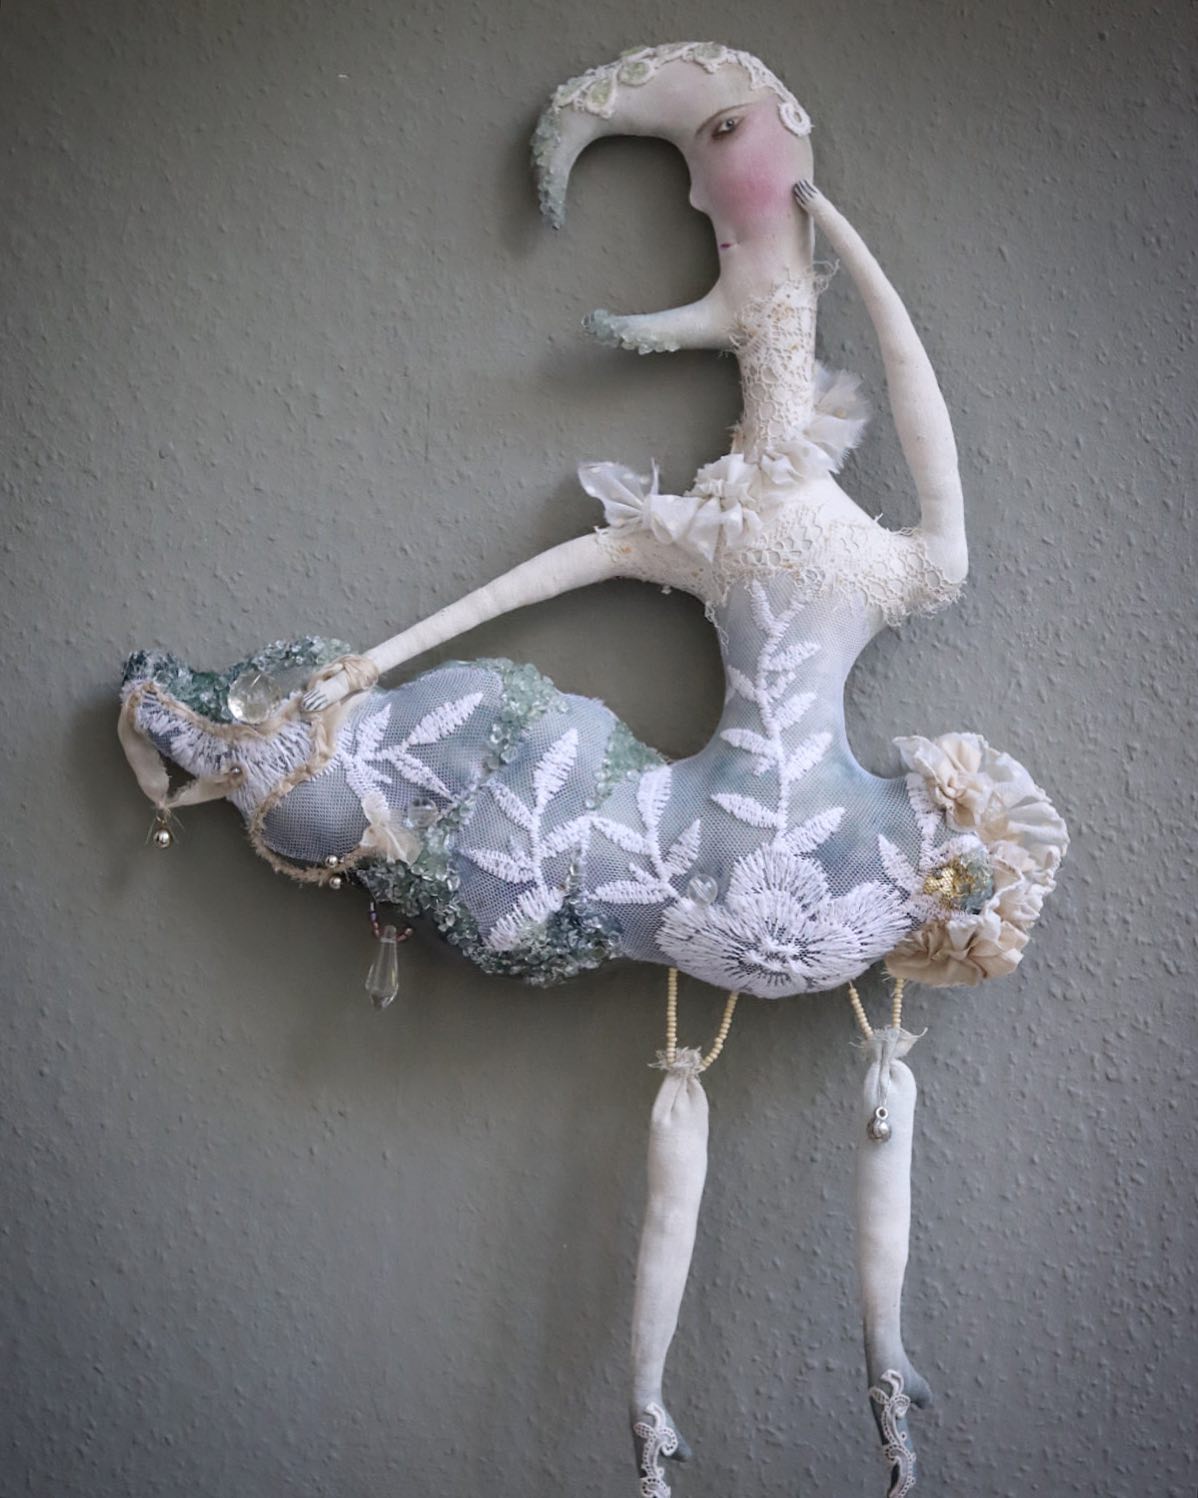 Magical Textile Dolls By Anouk De Groot (2)